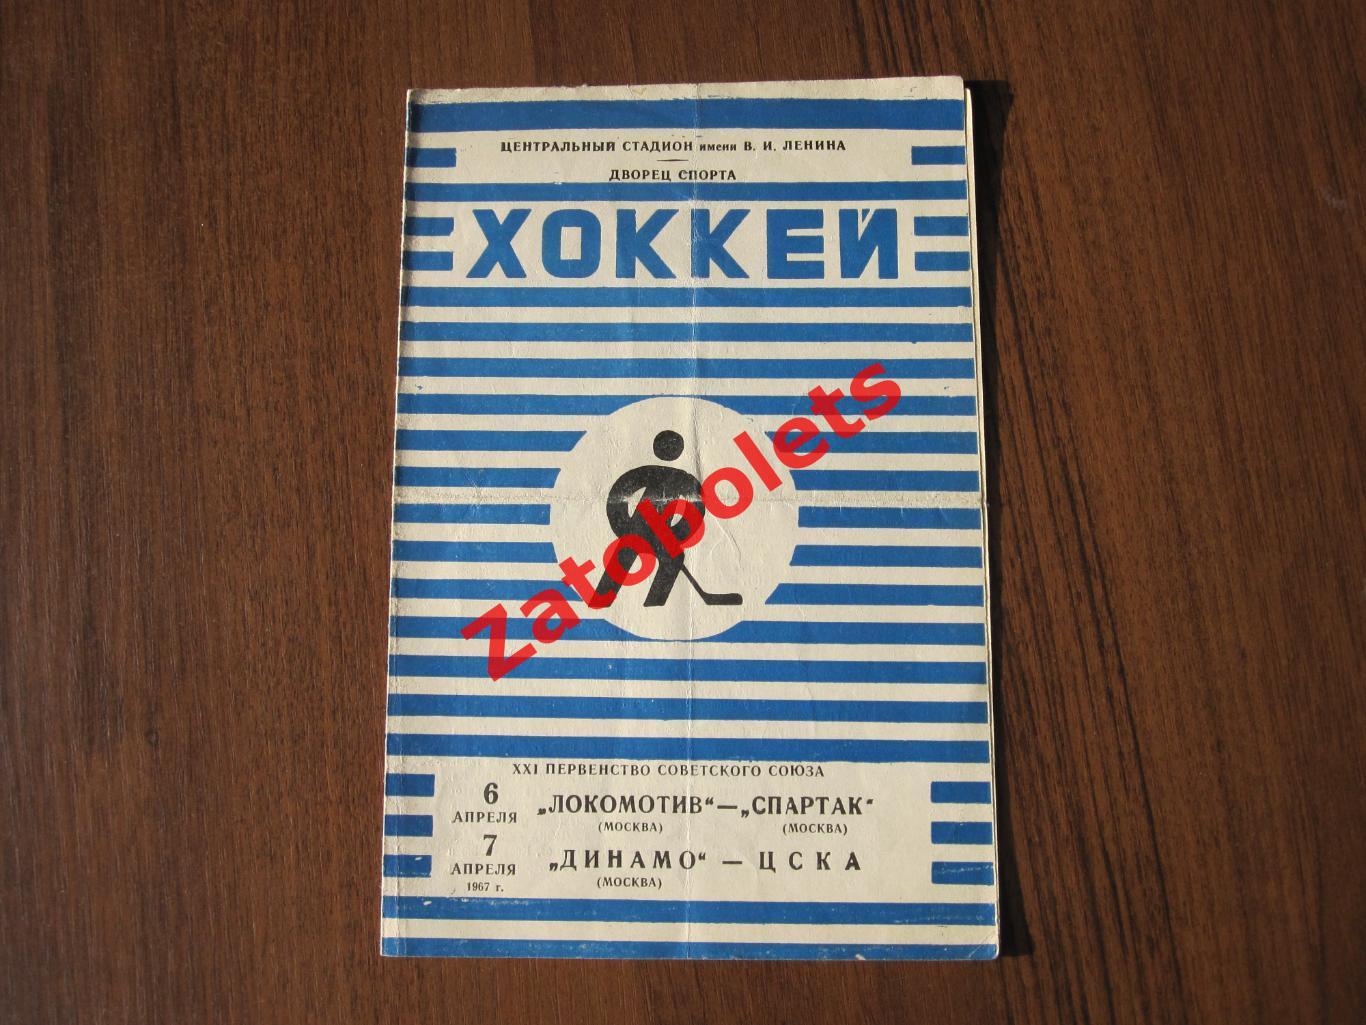 Локомотив Москва - Спартак Москва / Динамо Москва - ЦСКА 06-07.04.1967